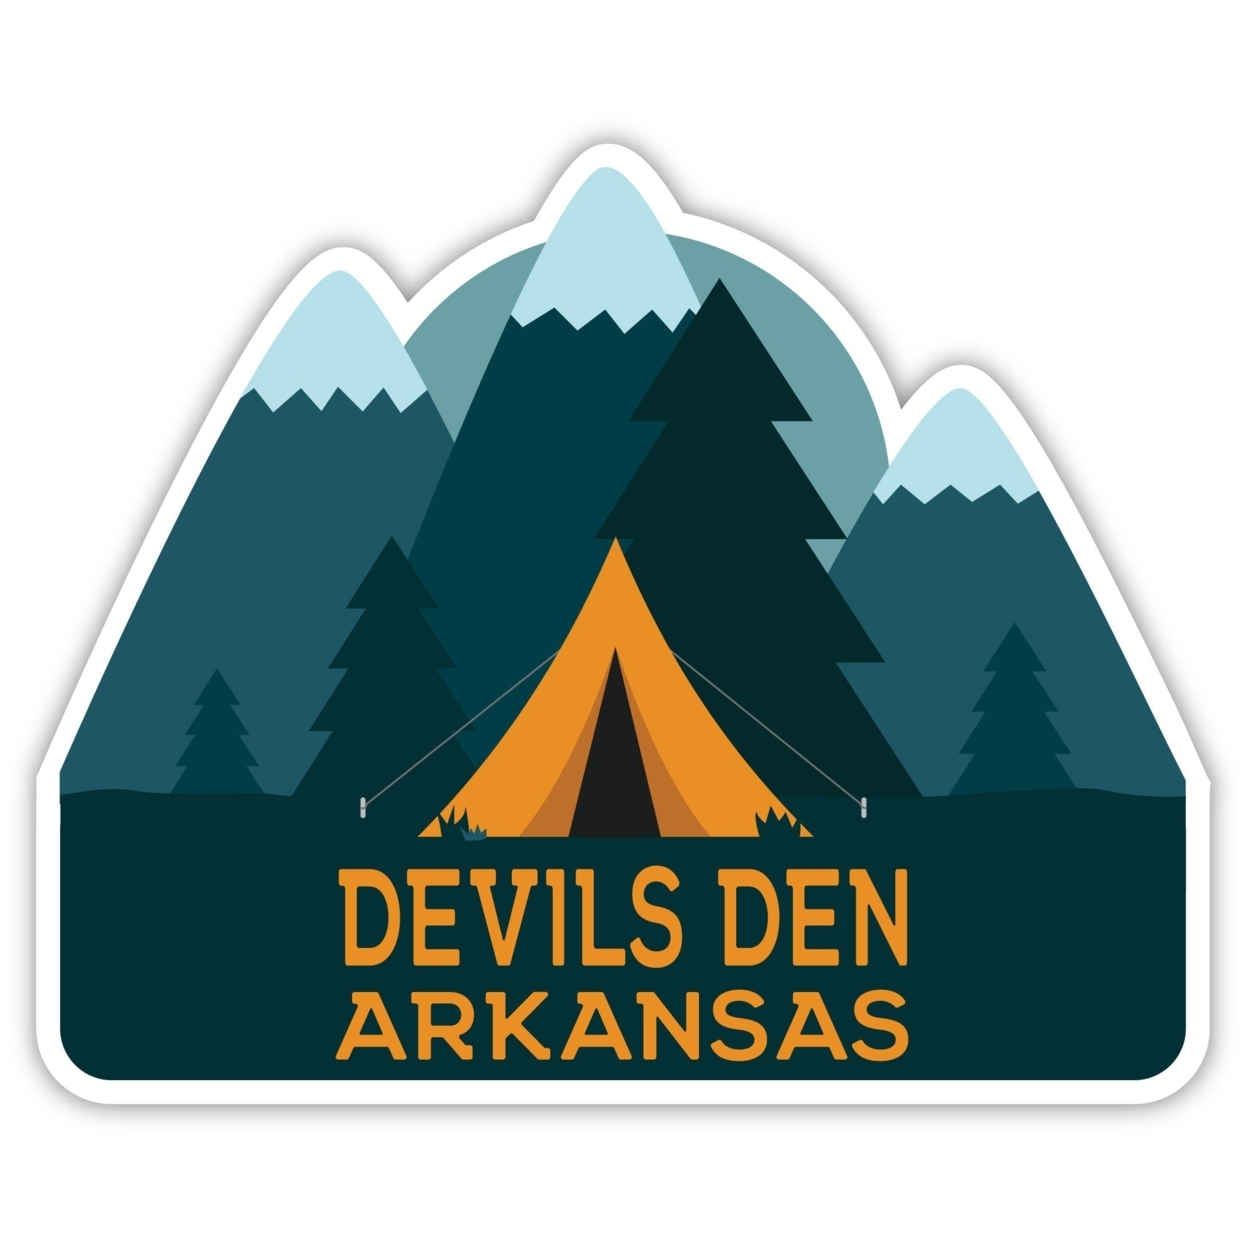 Devils Den Arkansas Souvenir Decorative Stickers (Choose Theme And Size) - Single Unit, 4-Inch, Tent